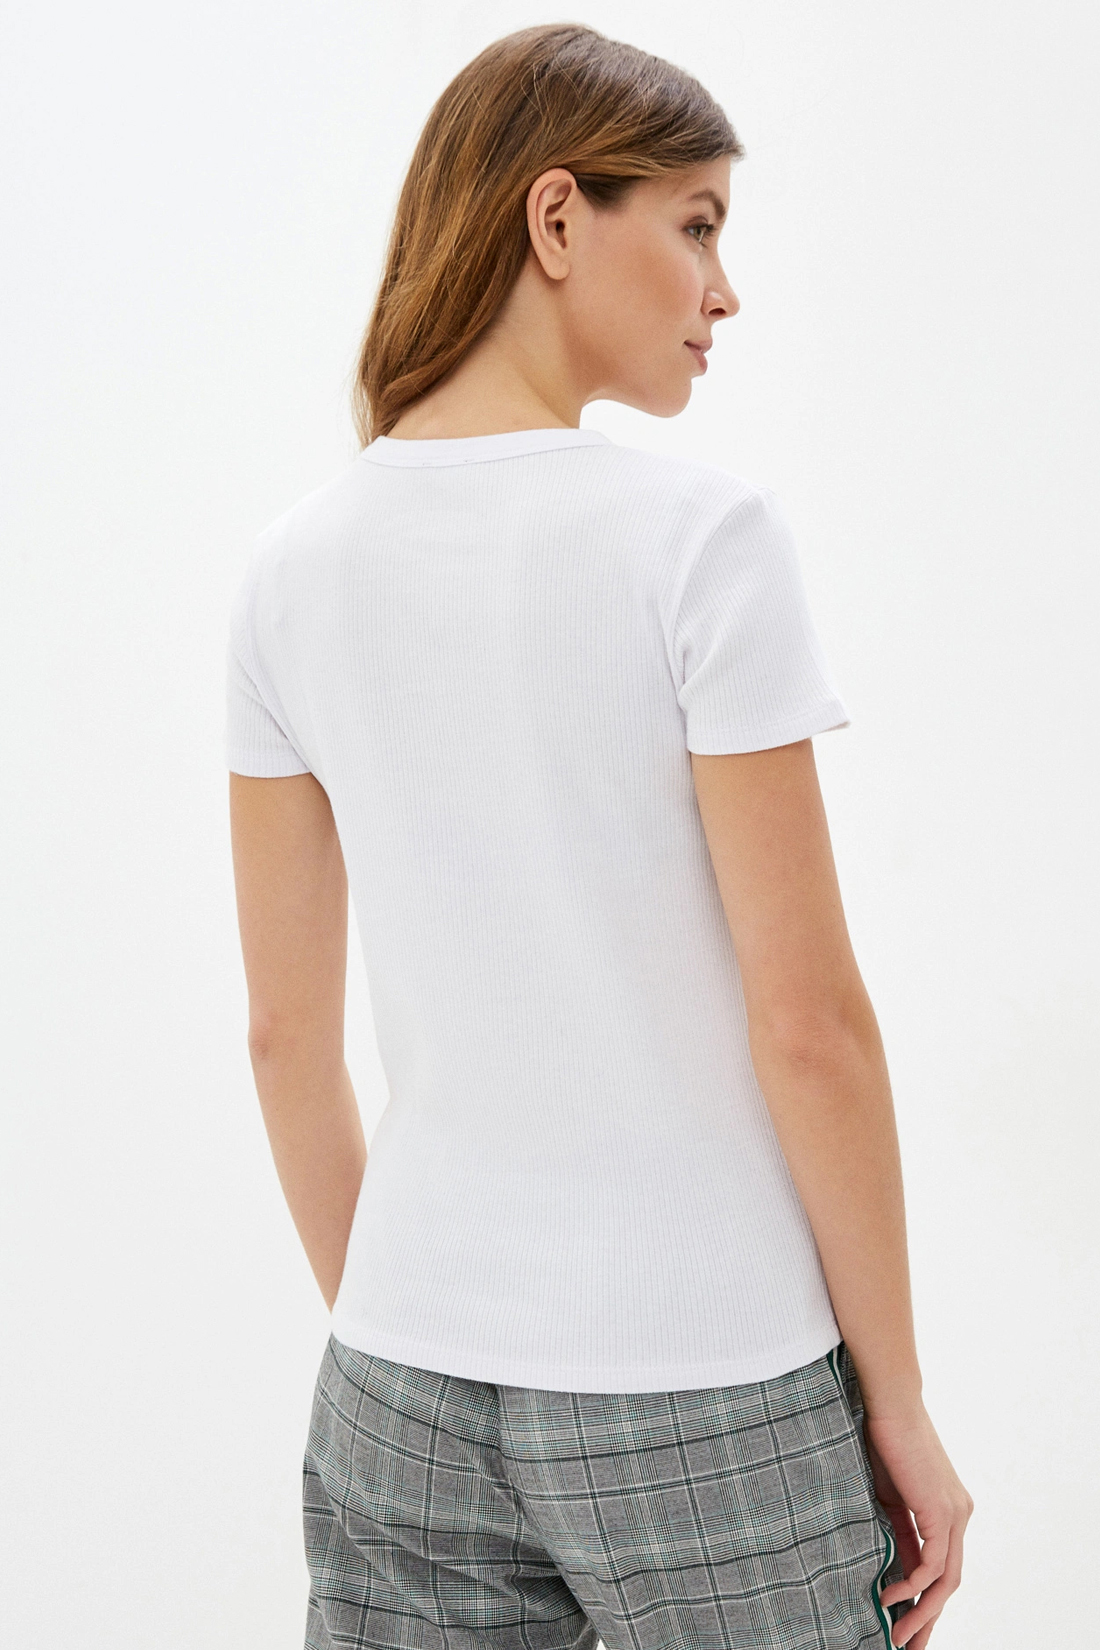 Базовая футболка (арт. baon B230201), размер L, цвет белый Базовая футболка (арт. baon B230201) - фото 2